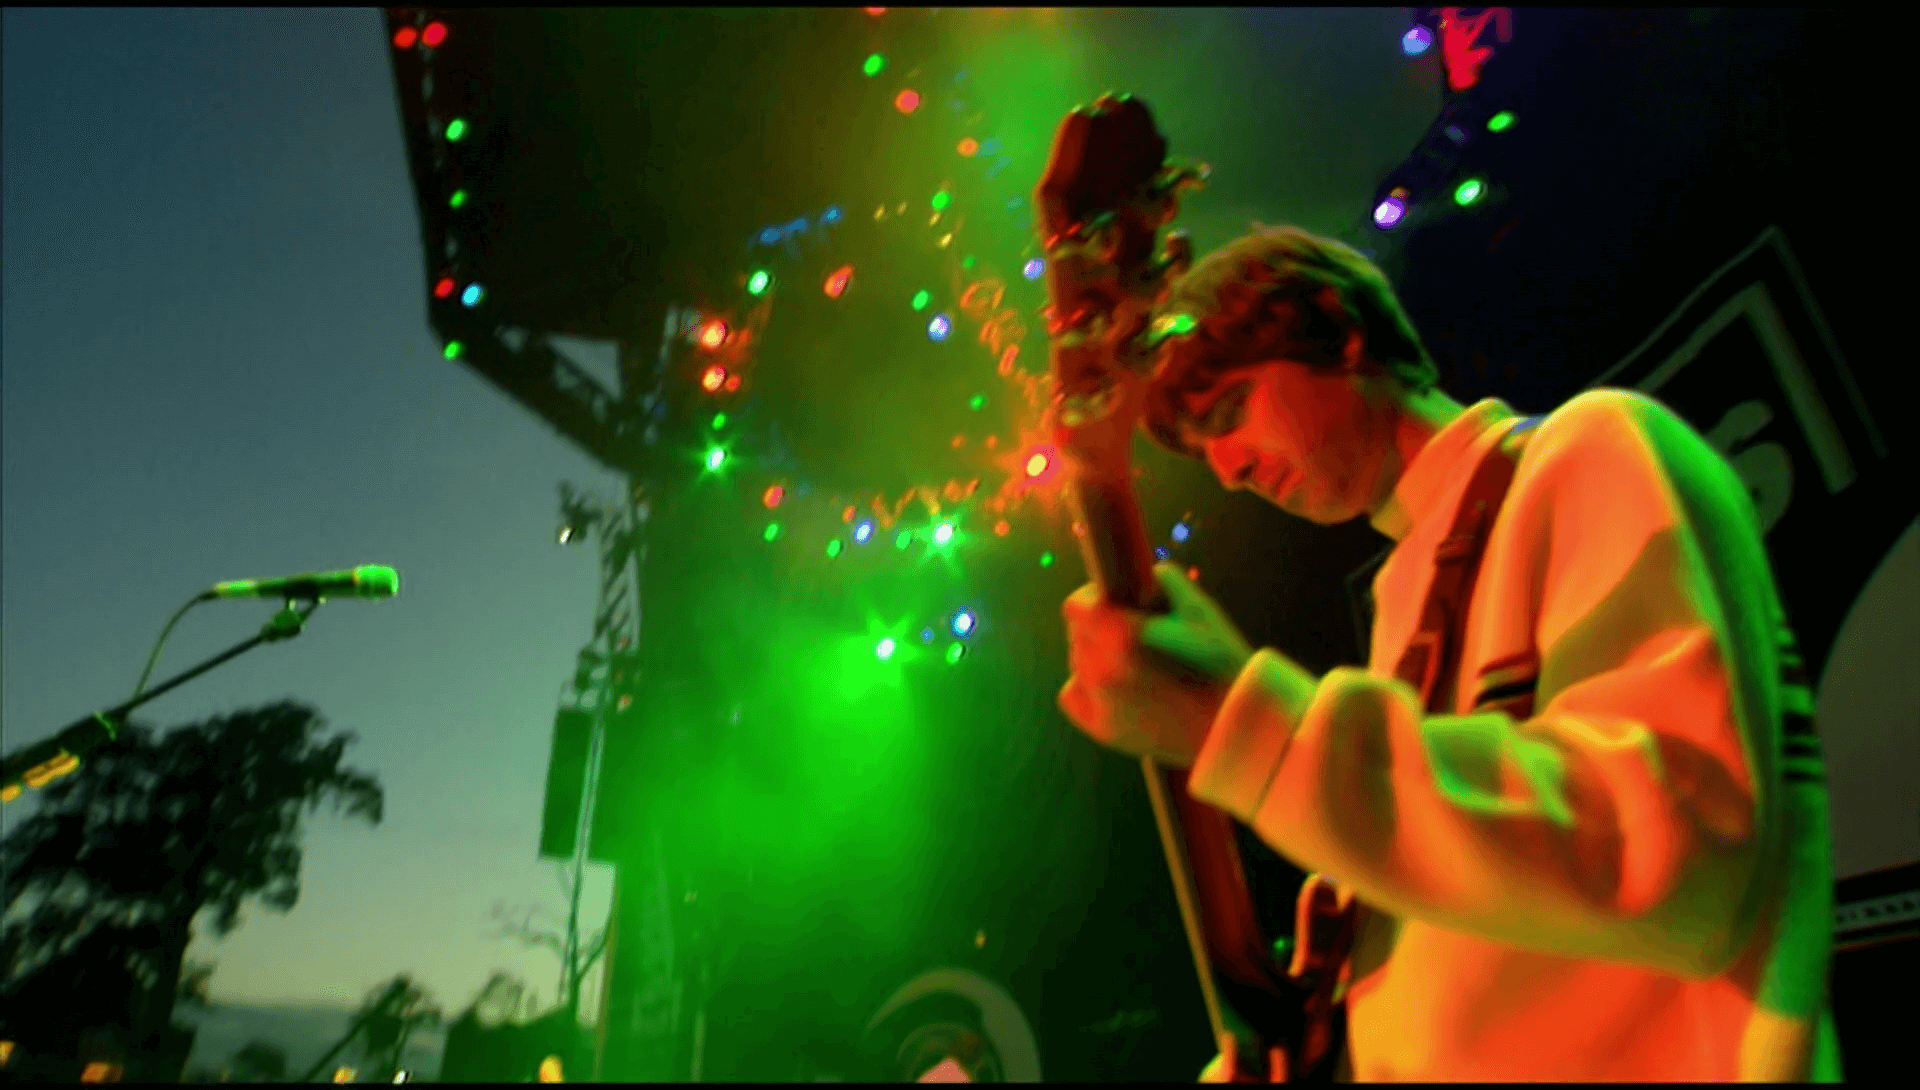 Oasis at Knebworth Park; Stevenage, Hertforshire, England - August 10, 1996